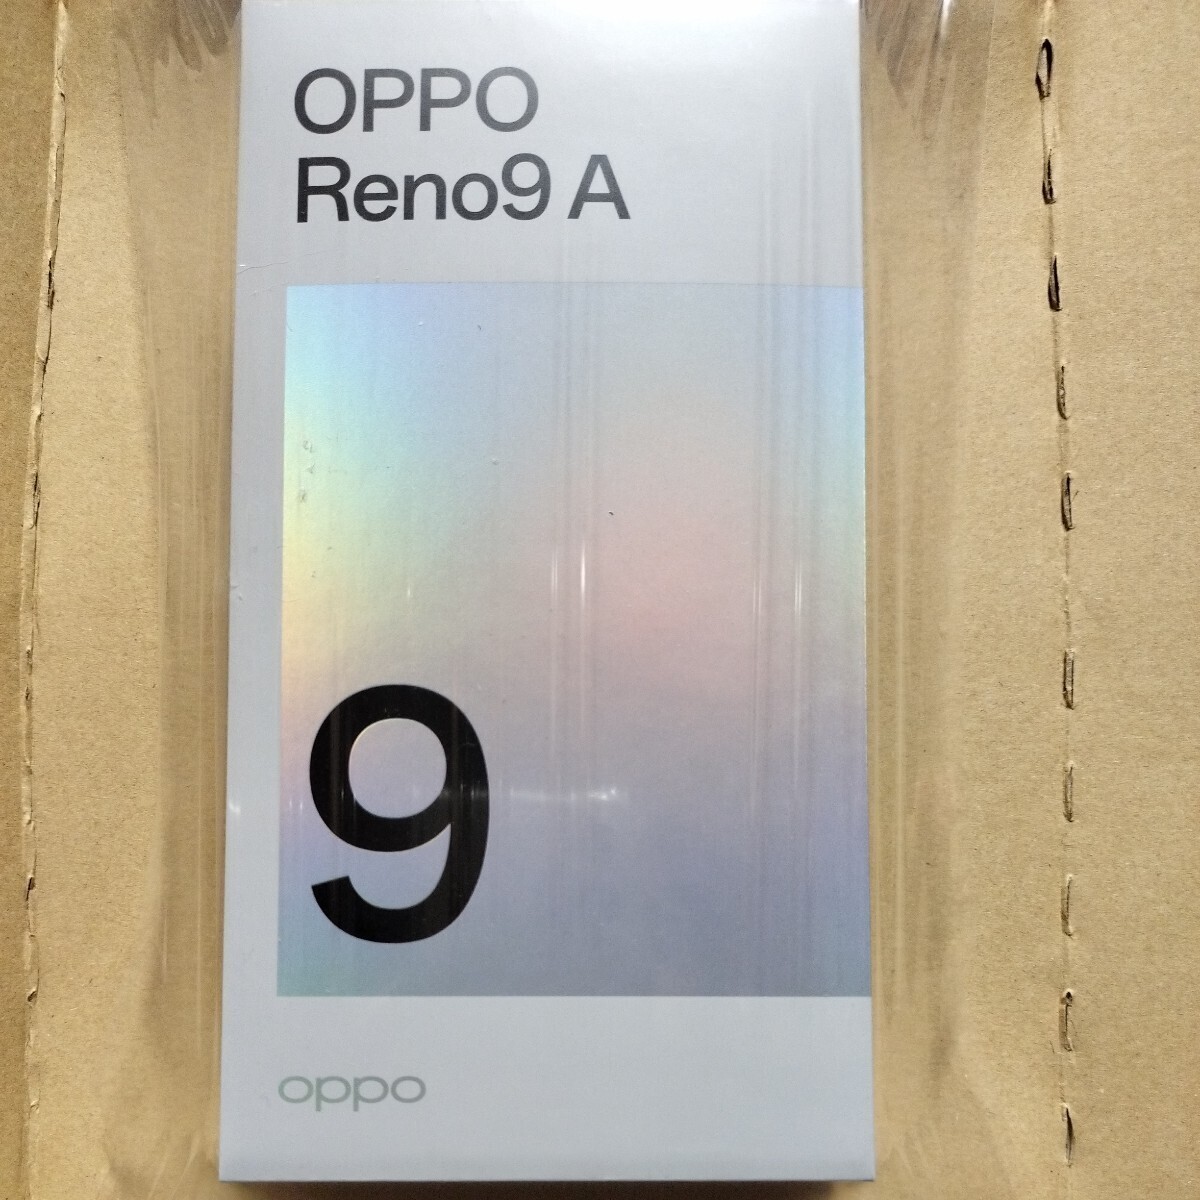  новый товар нераспечатанный OPPO Reno9 A корпус Night черный Ymobile версия Y!mobile версия Reno9A смартфон Android